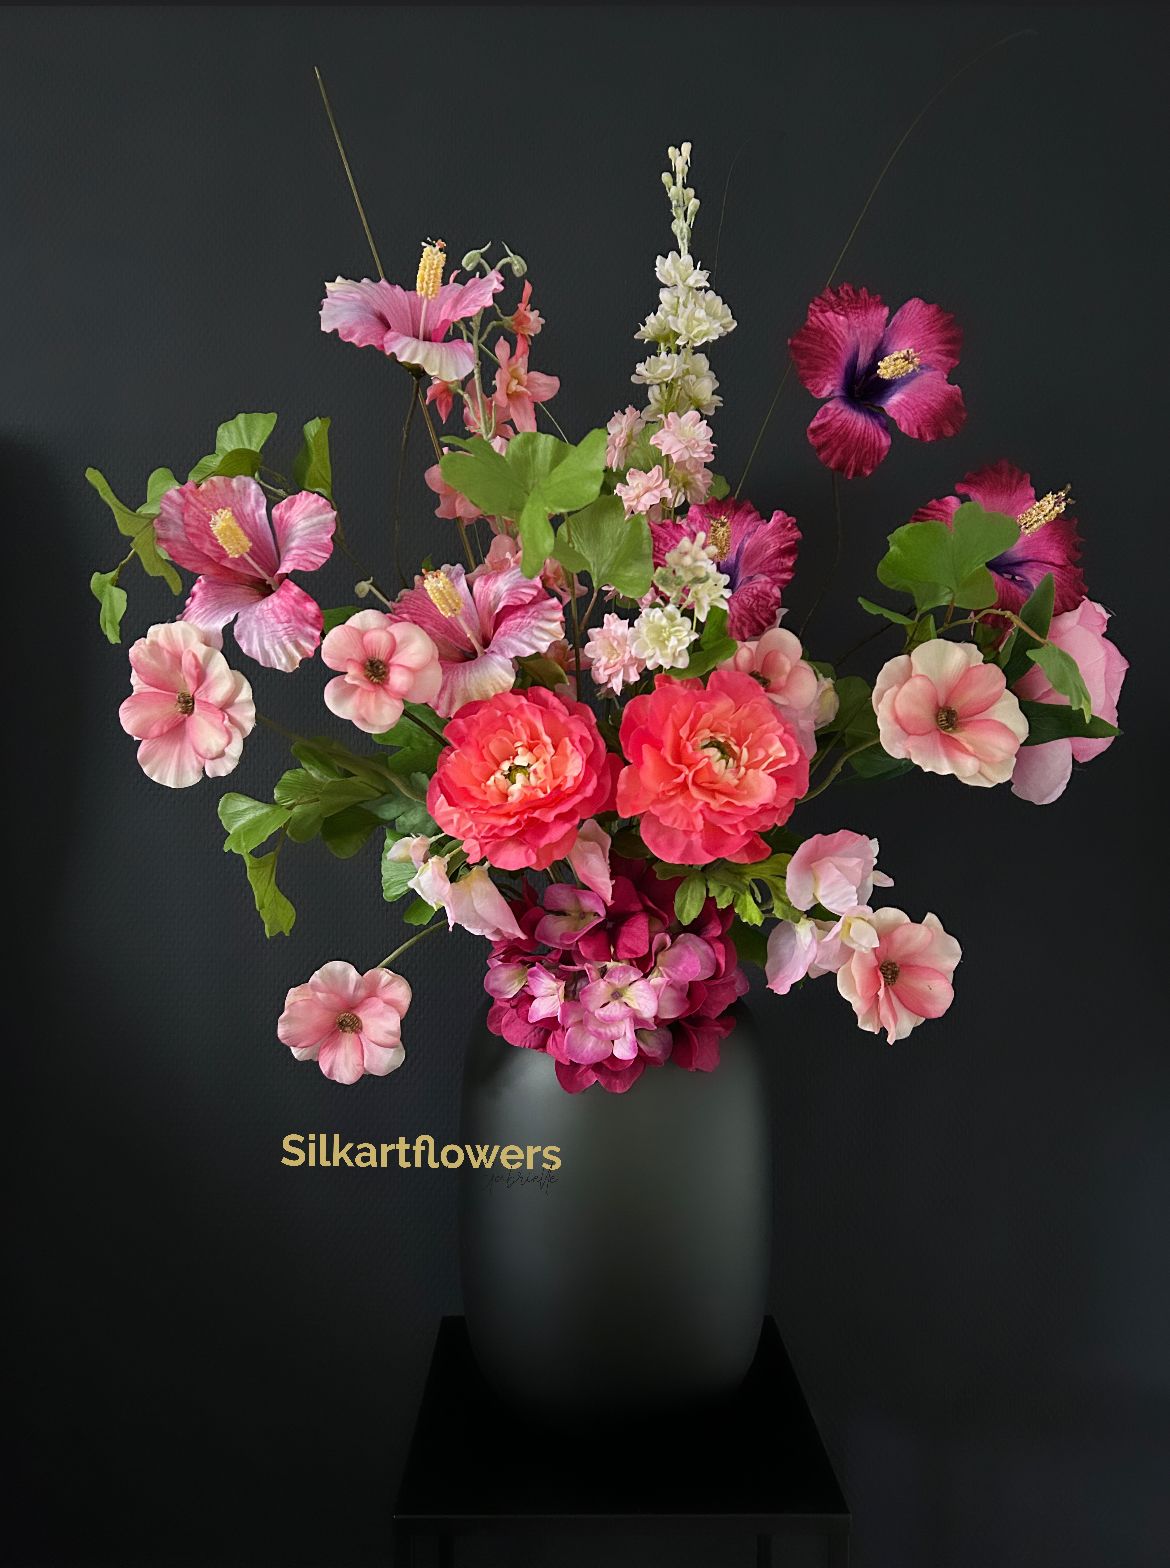 Stel zelf je boeket samen - Silkartflowers.com